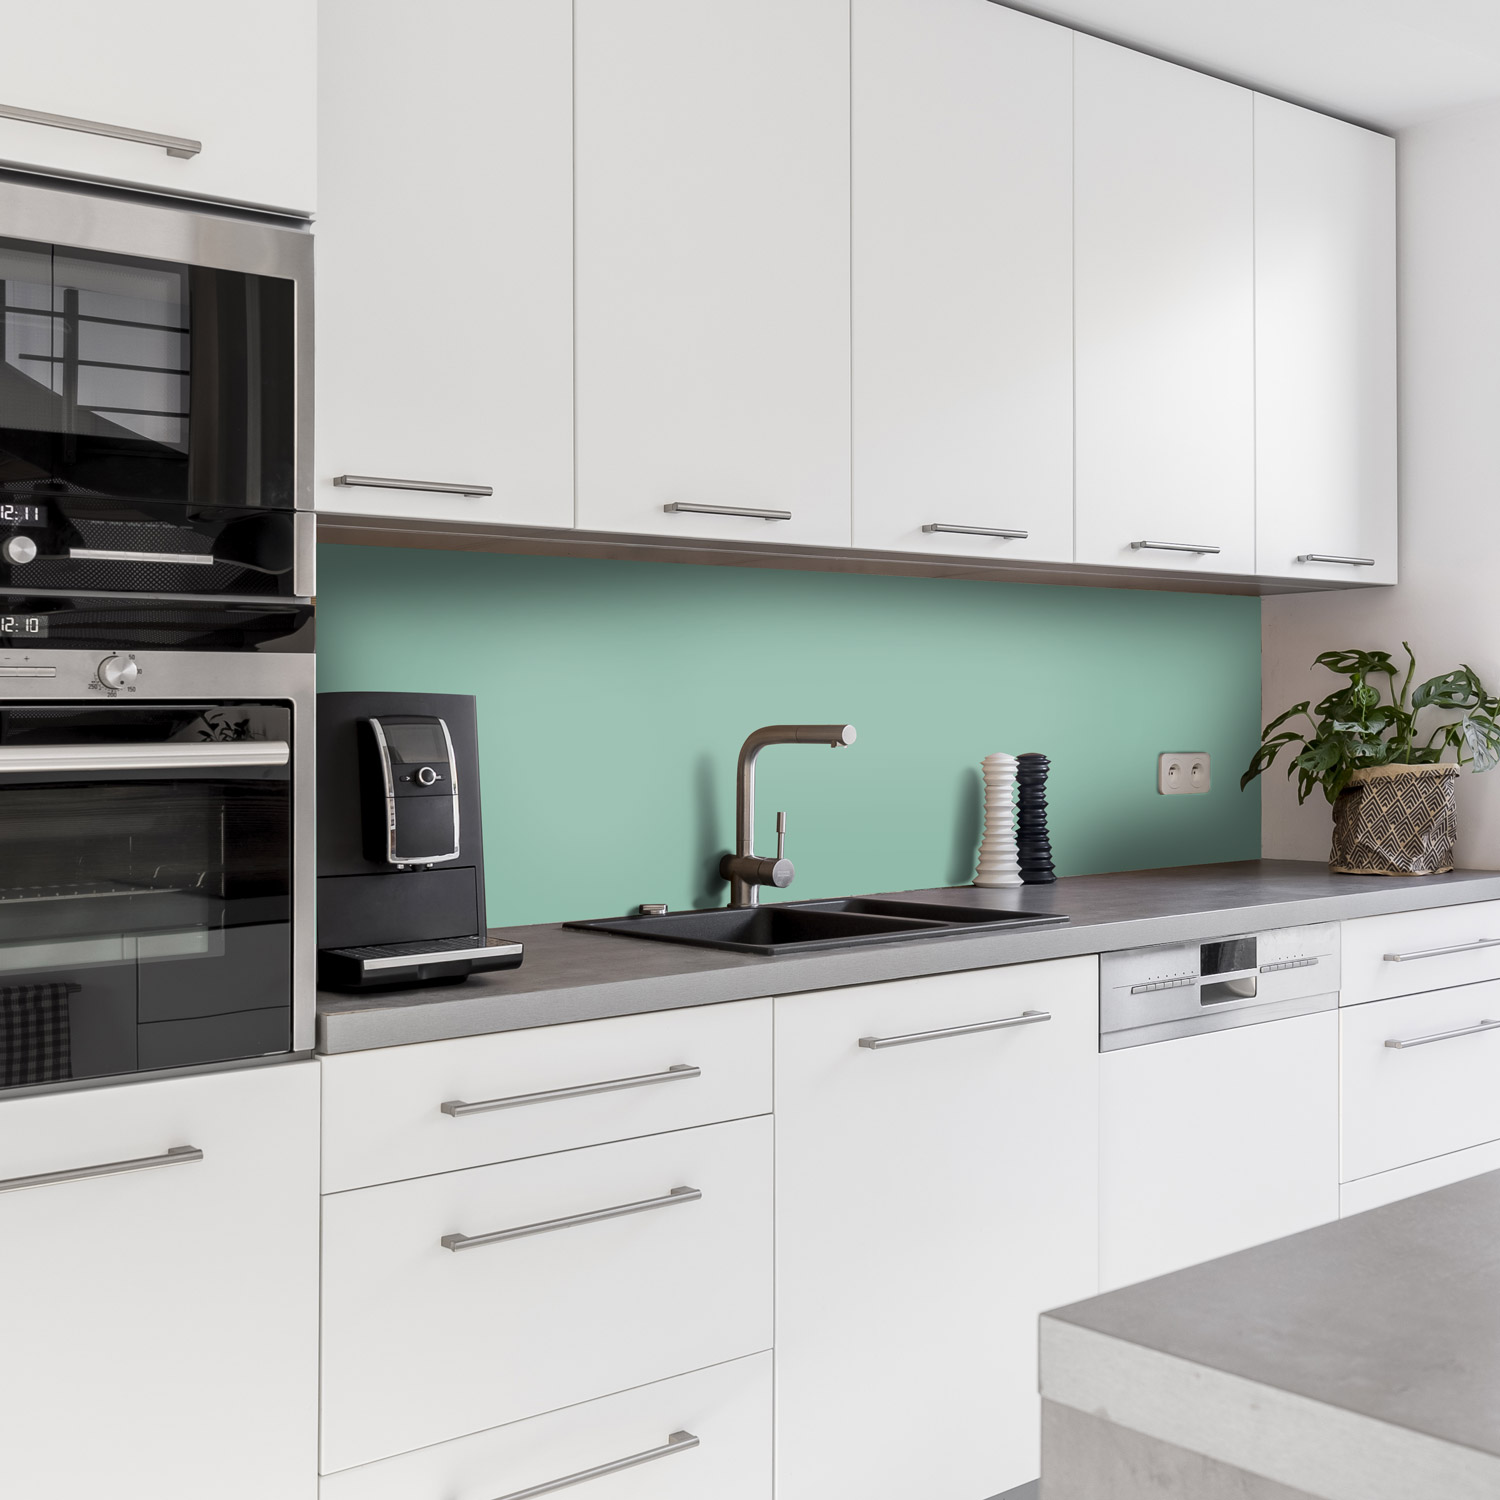  Küchenrückwand mit Unifarben Motiv als Fliesenersatz und Spritzschutz